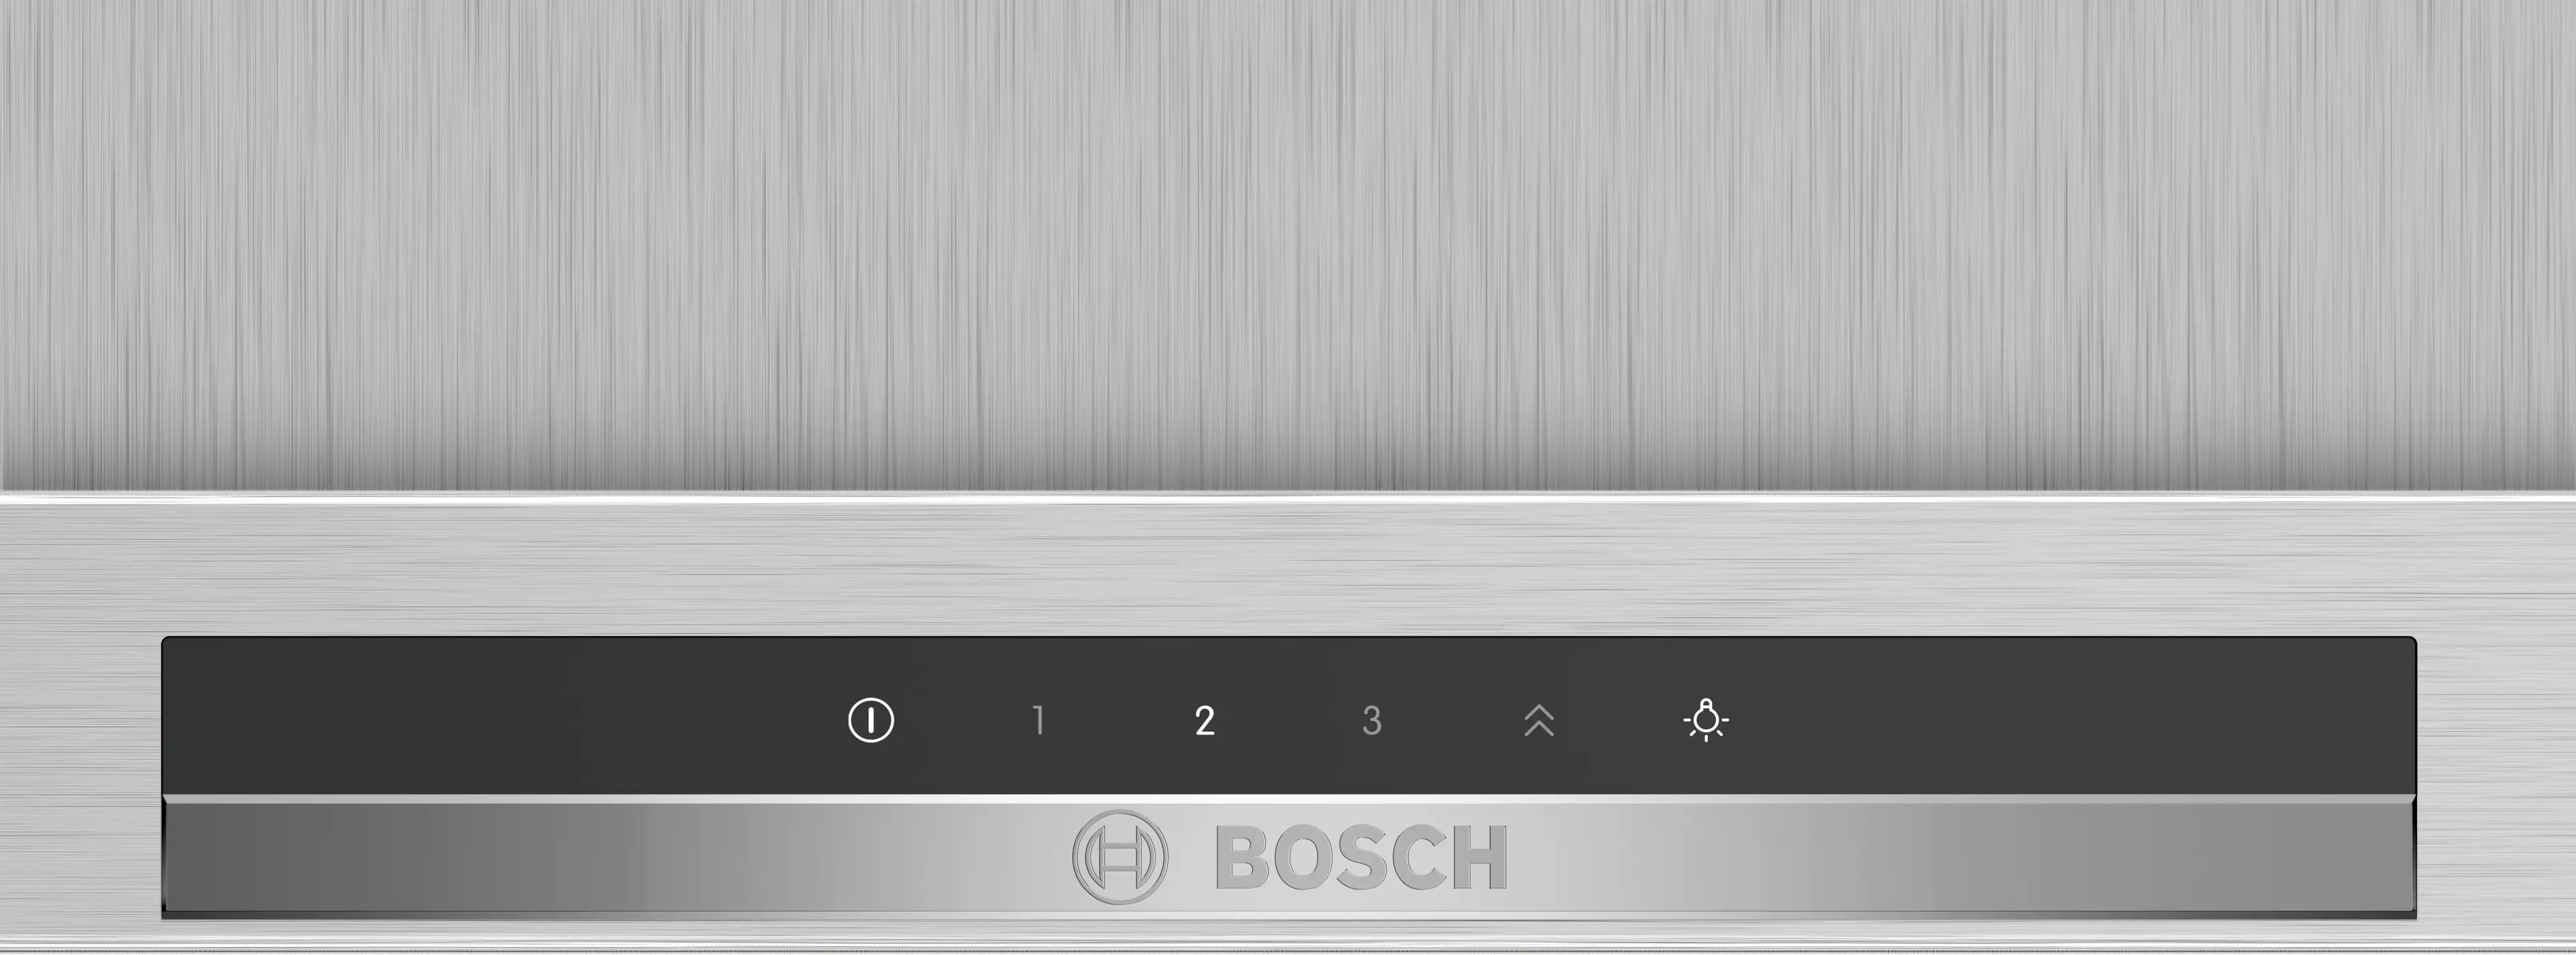 Кухонная вытяжка Bosch DIB97IM50 цена 36179.00 грн - фотография 2